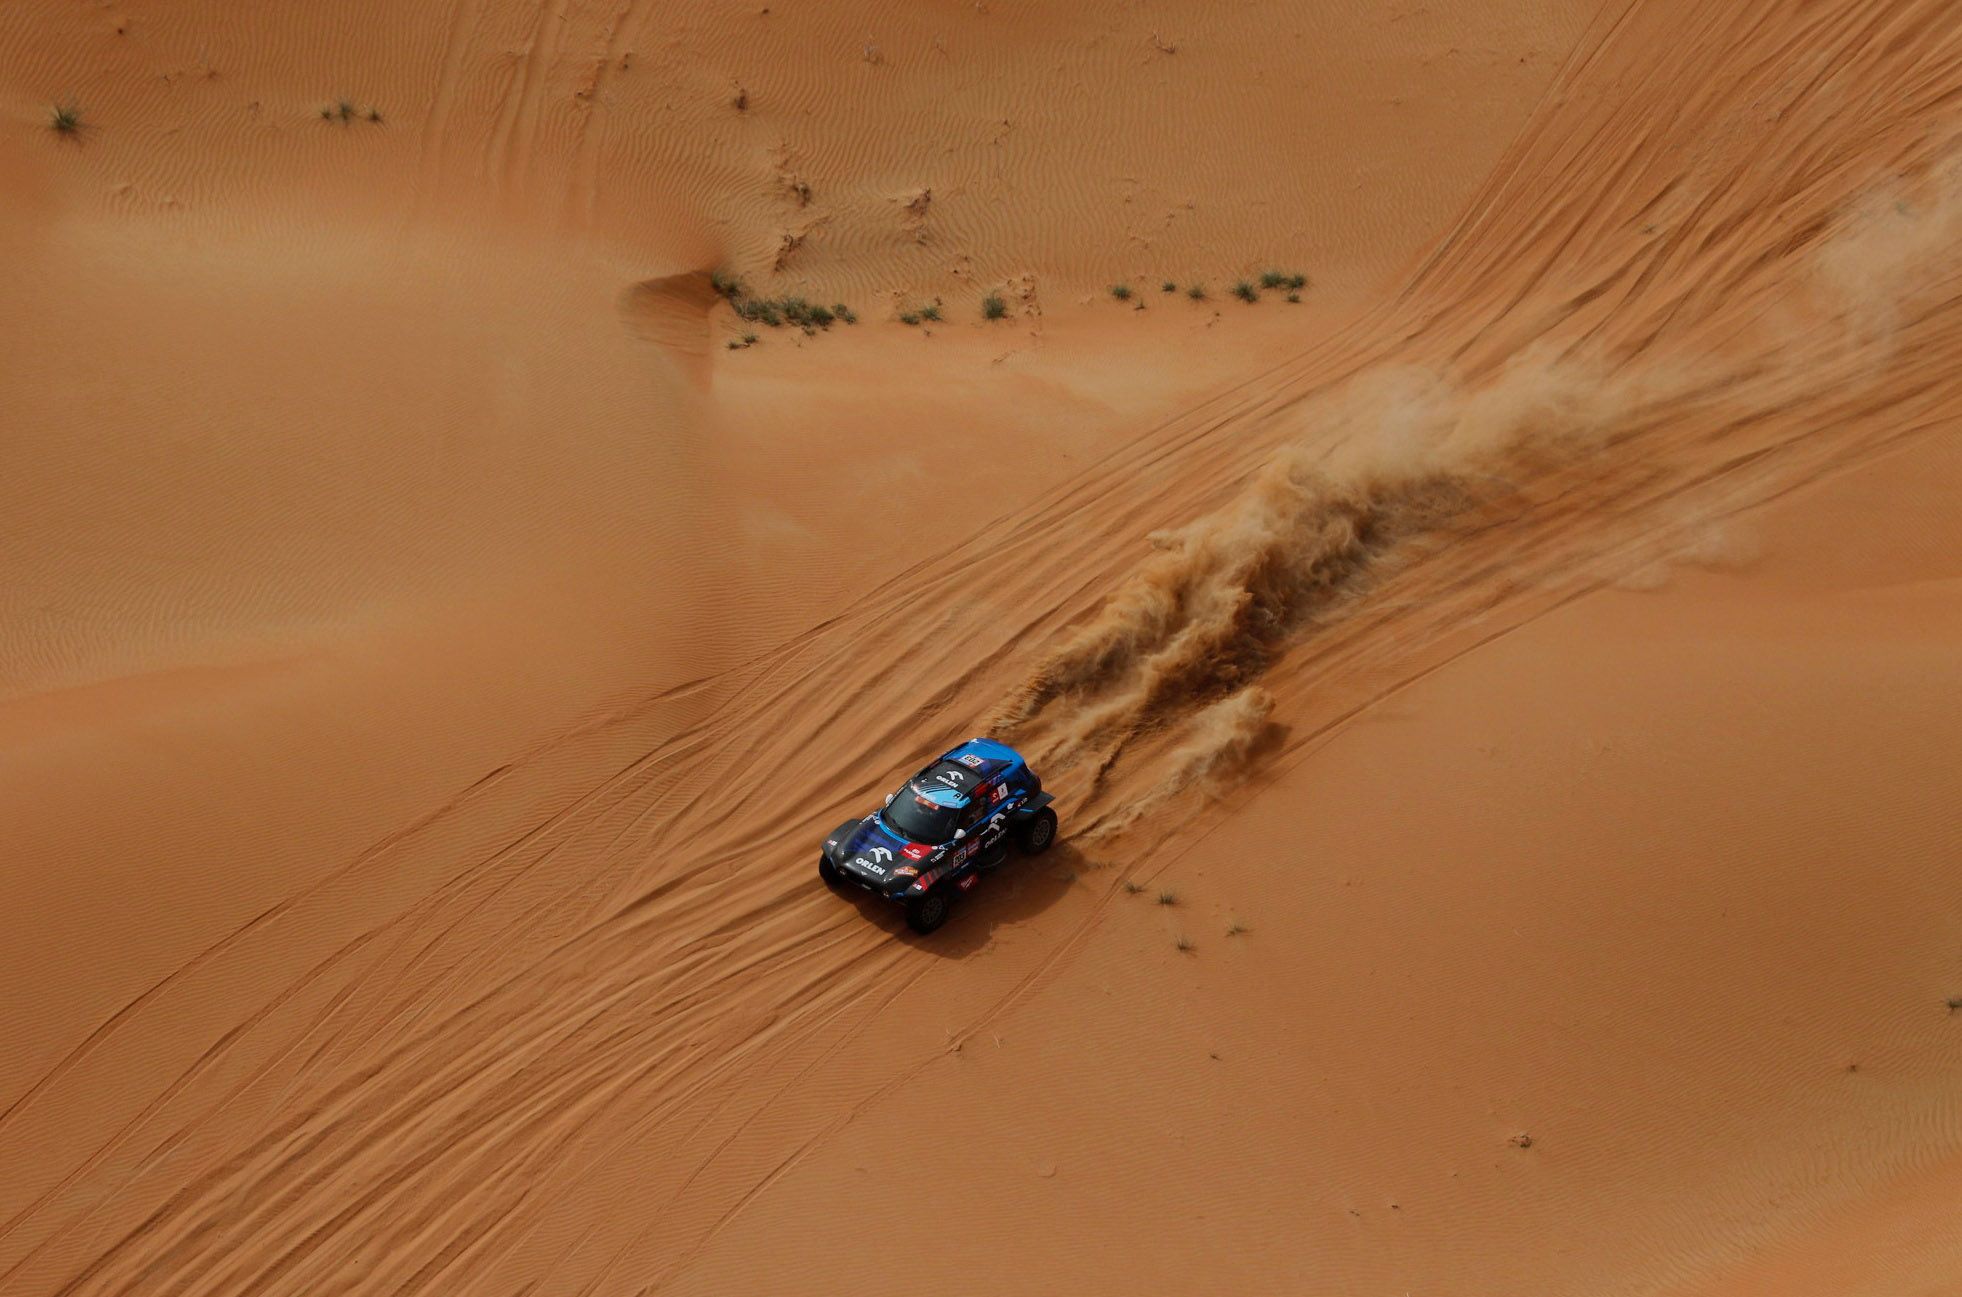 Dakar Rally (163609262).jpg